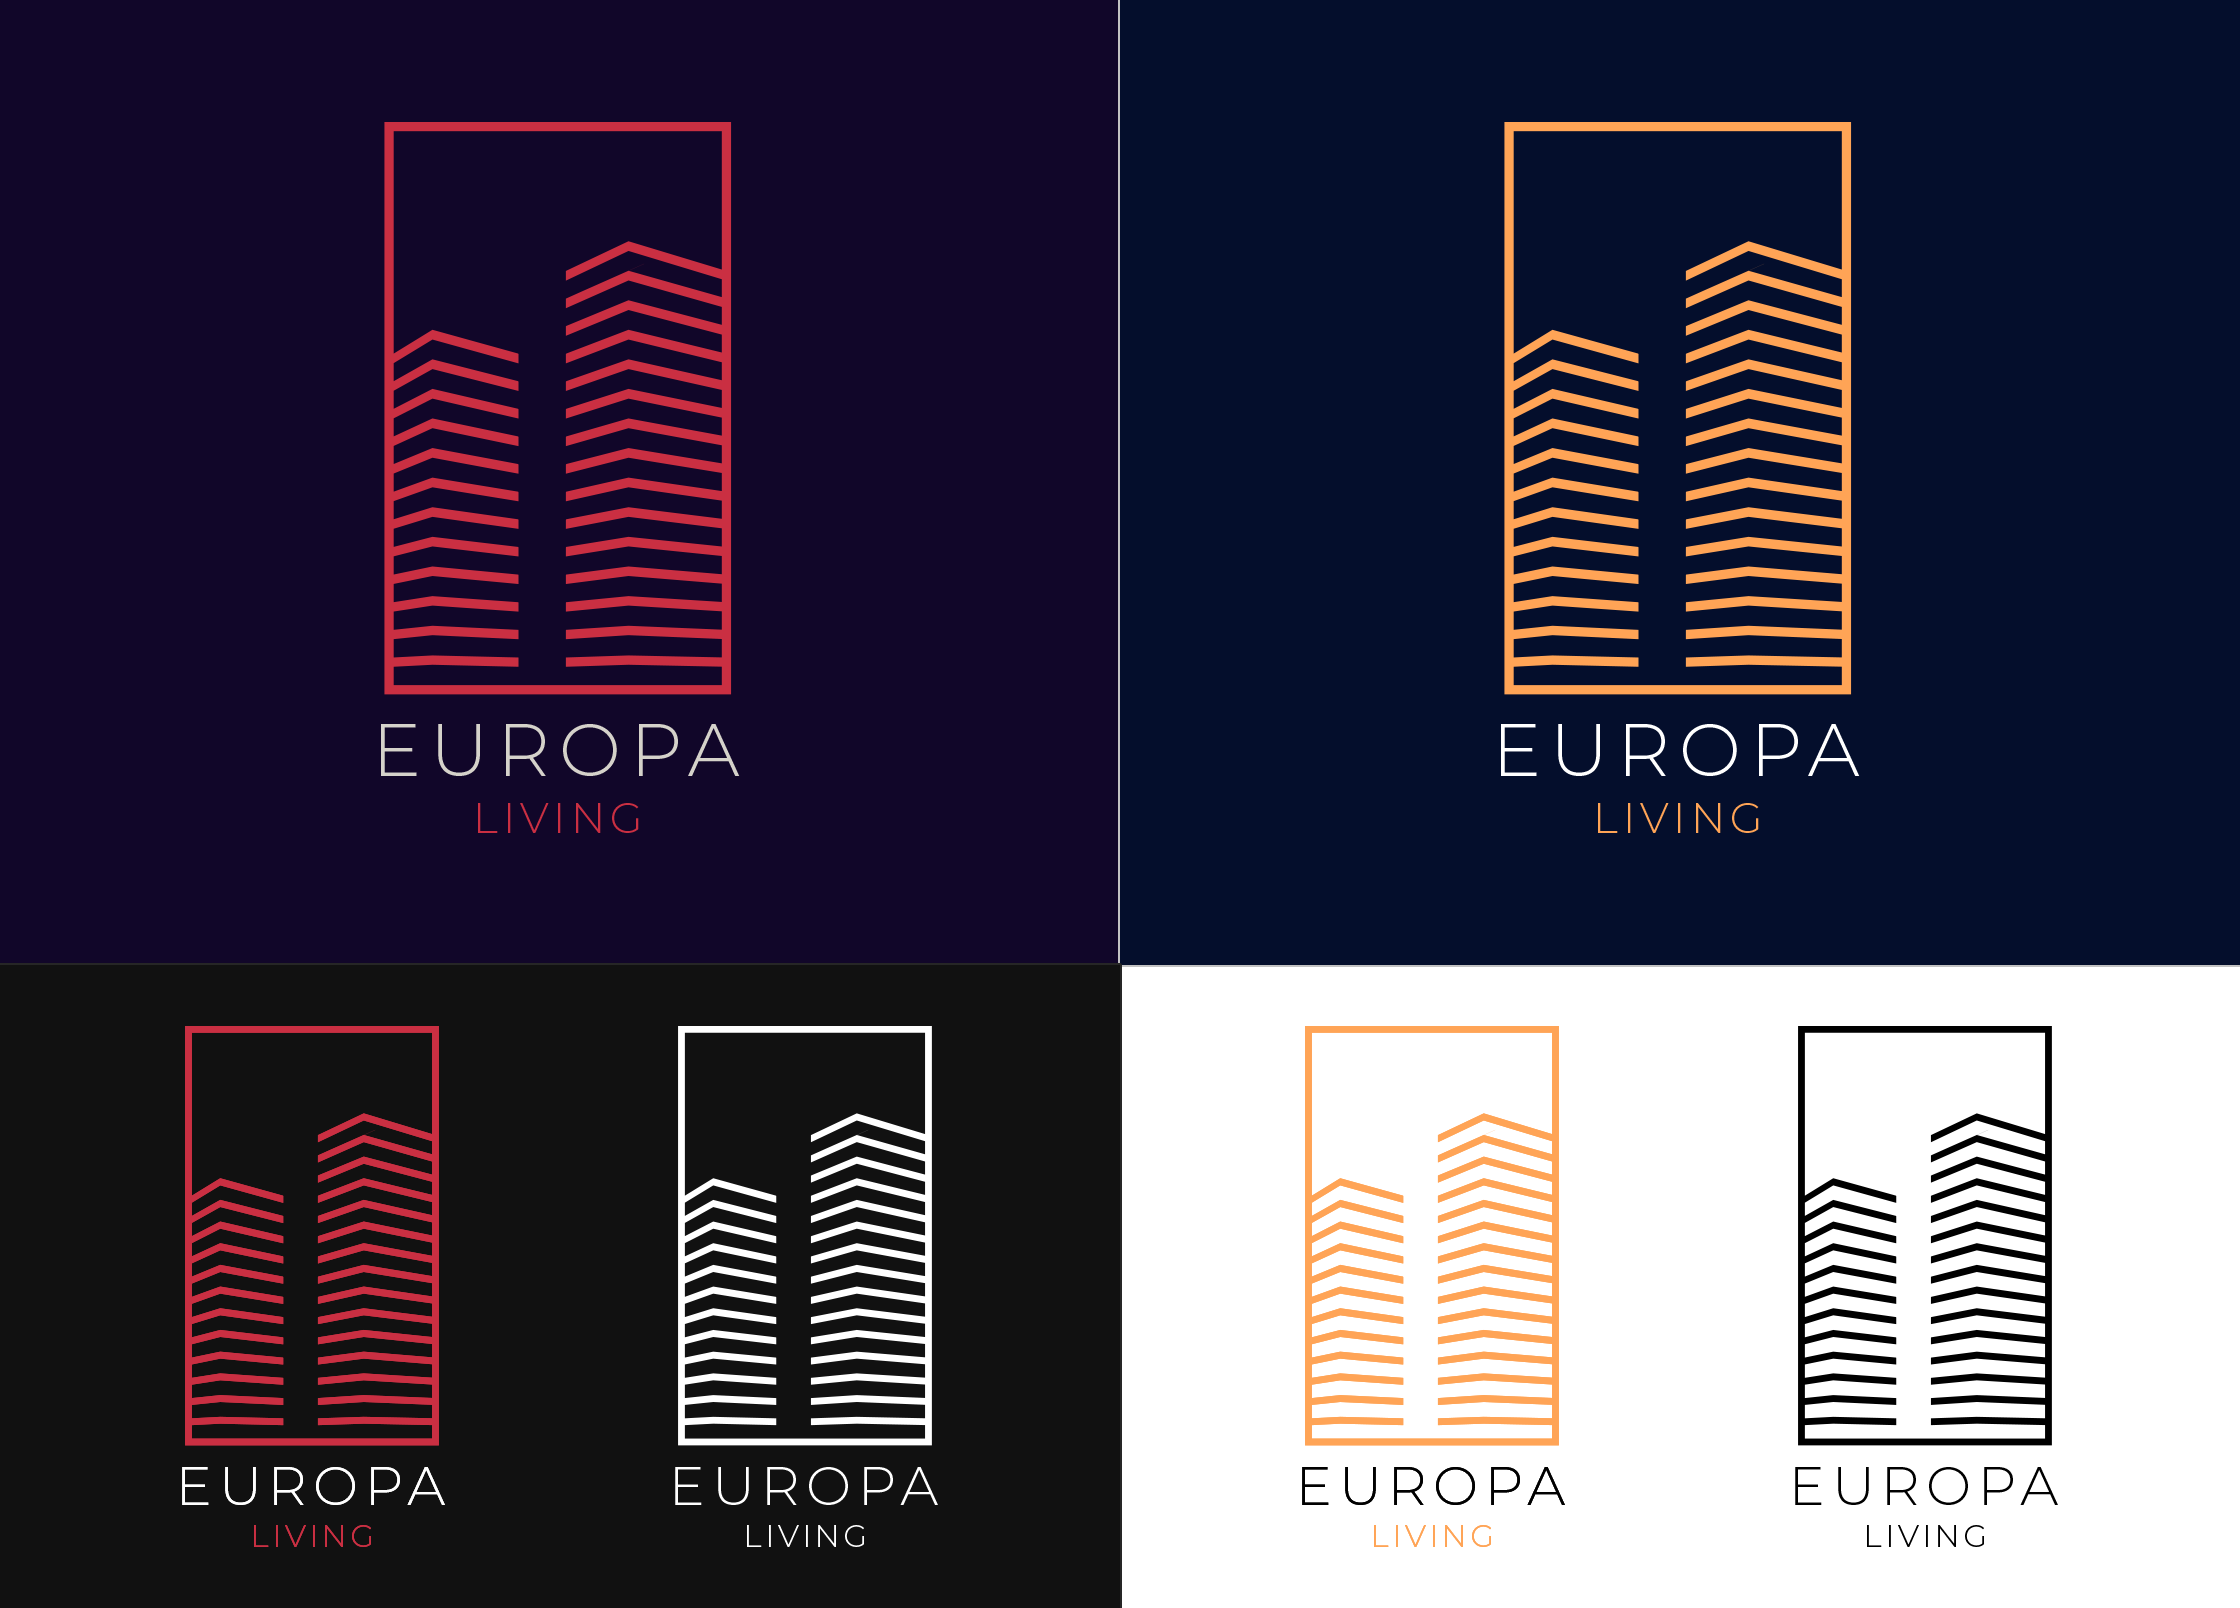 Europa Living logo concept 1 p2